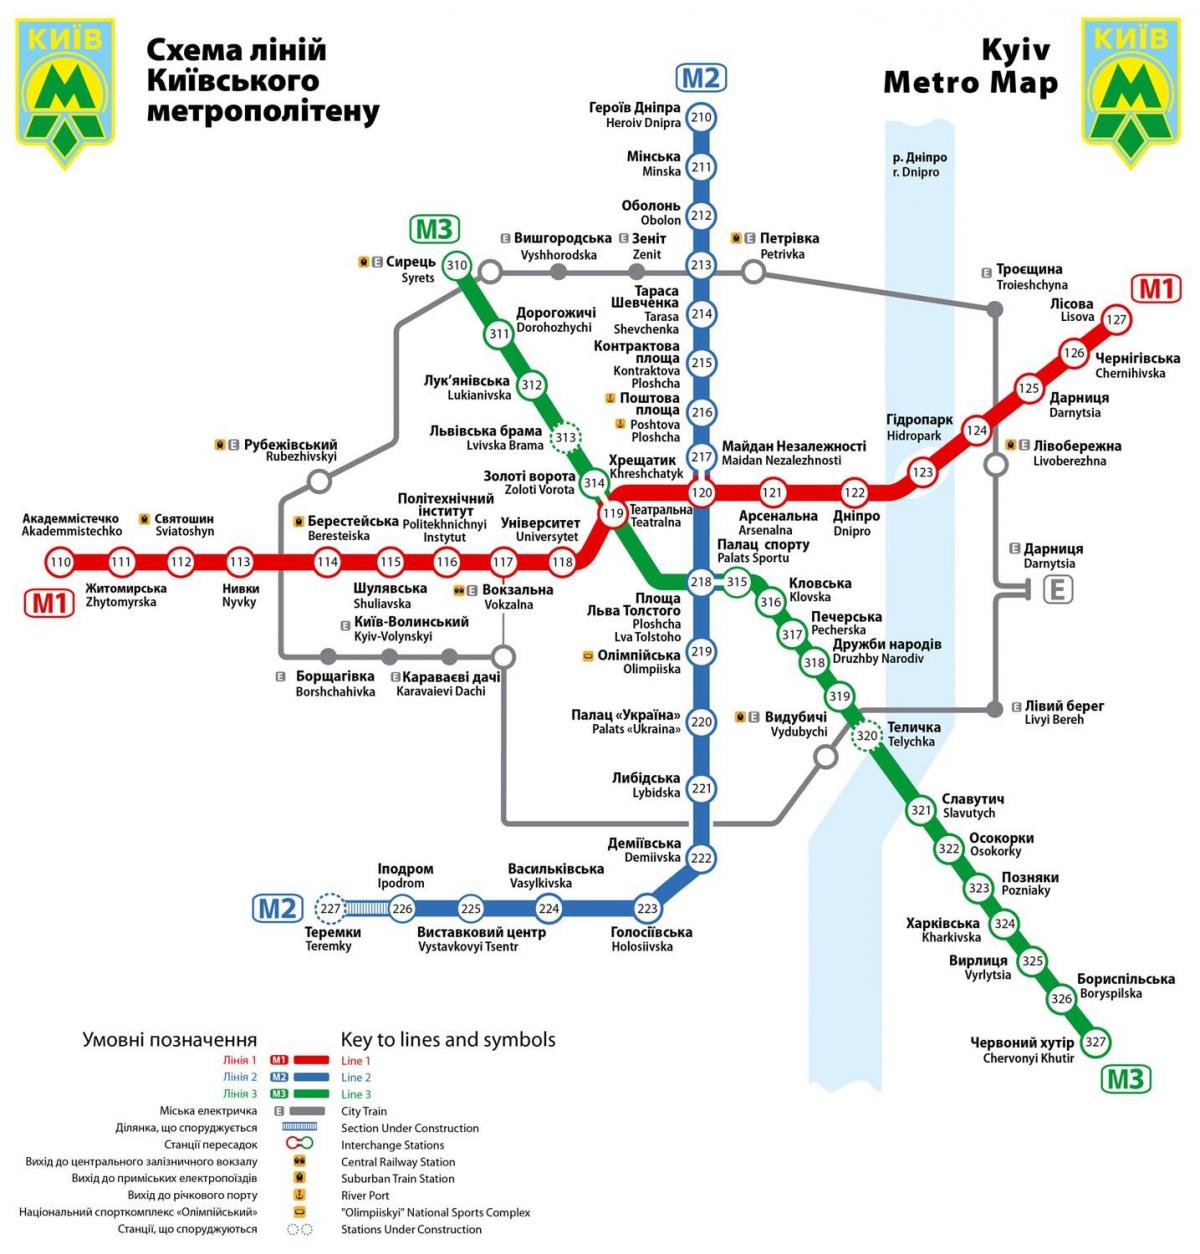 キエフの地下鉄駅の地図